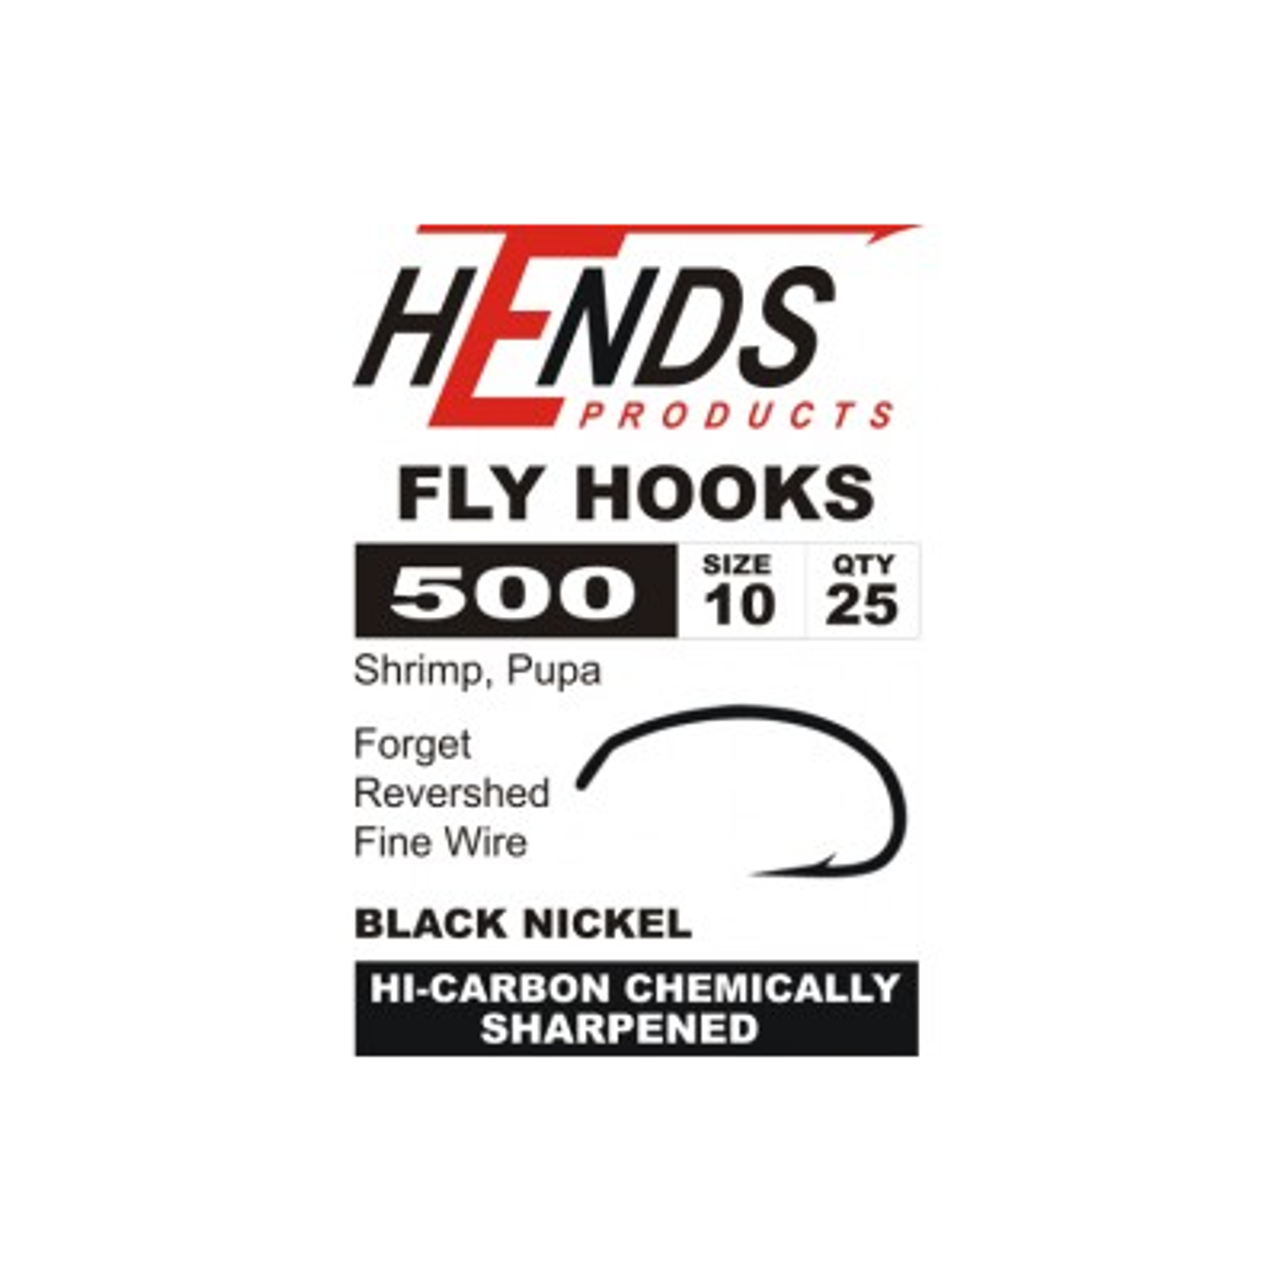 Hends 500 Pupa Shrimp Hooks - The Fly Tying Company